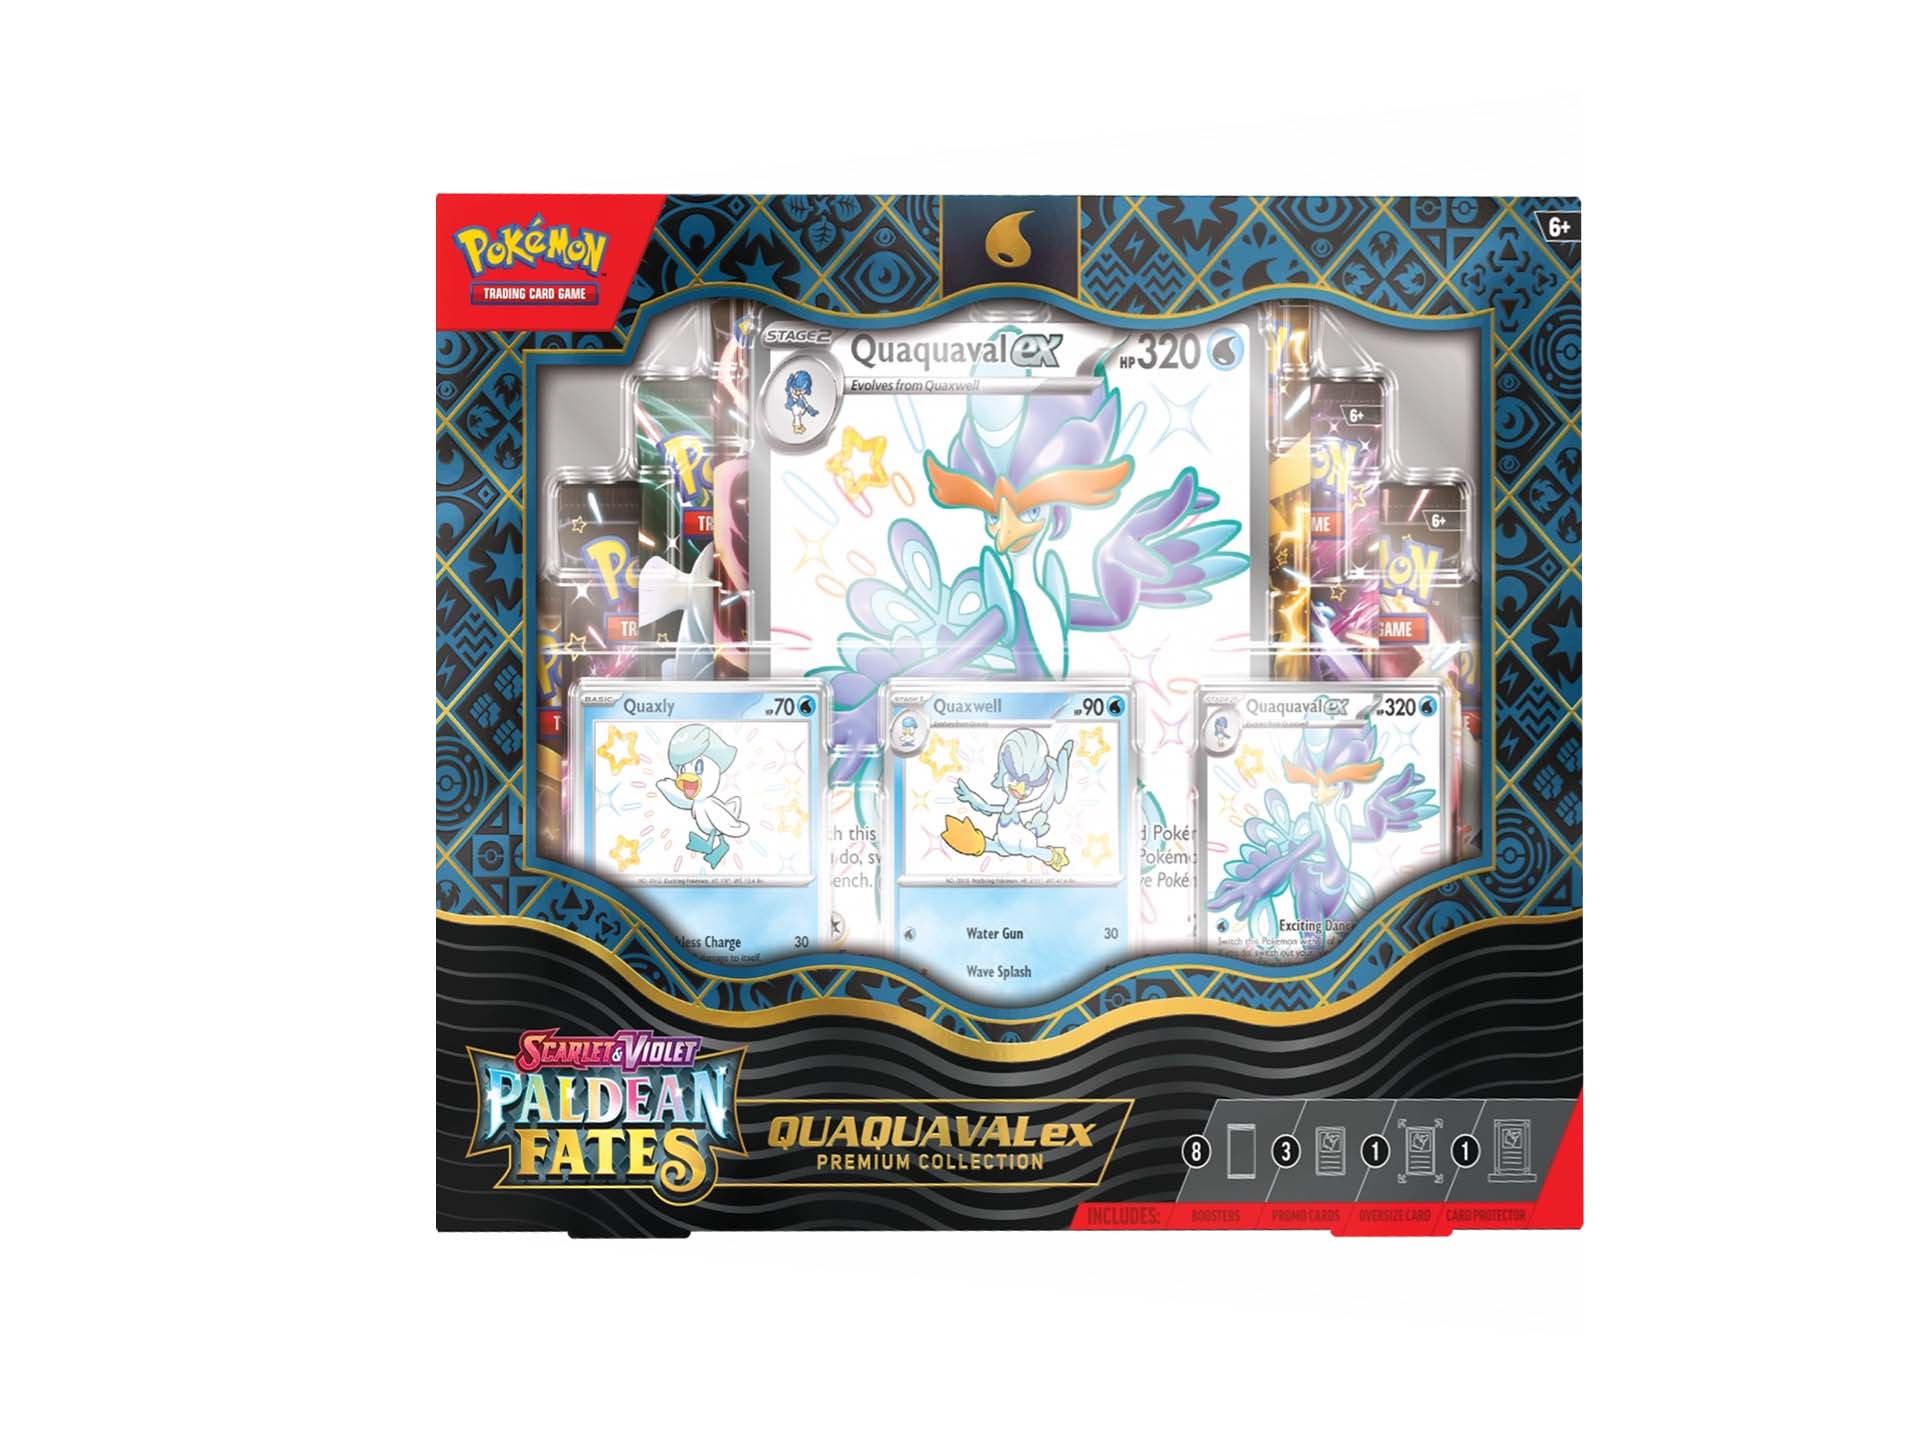 Pokemon Paldean Fates Quaquaval Ex Premium